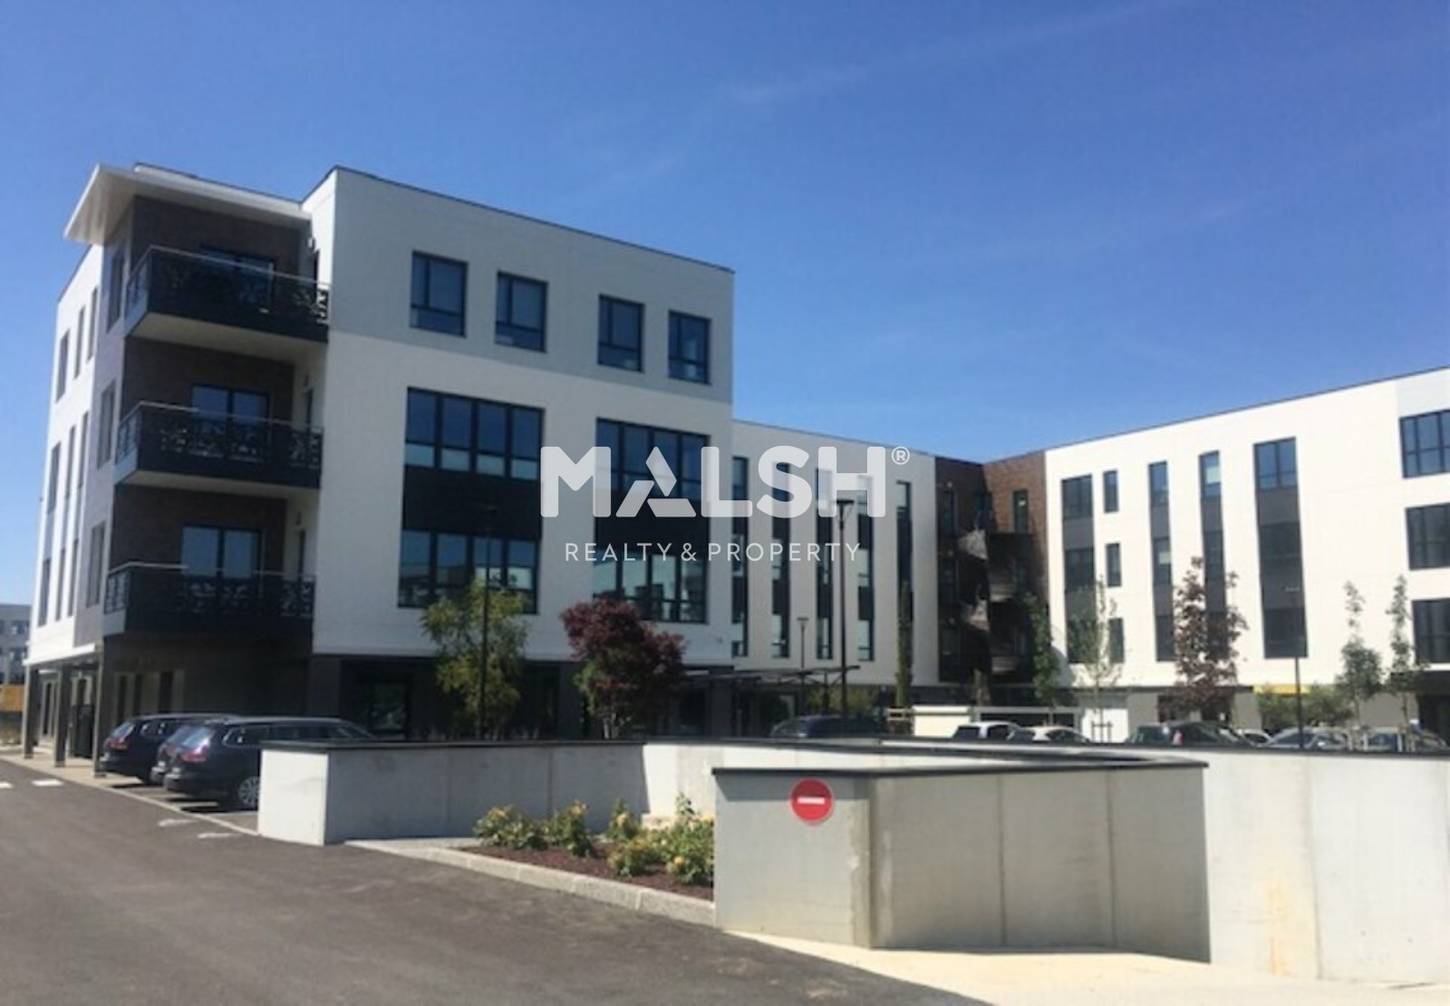 MALSH Realty & Property - Bureaux - Lyon EST (St Priest /Mi Plaine/ A43 / Eurexpo) - Genas - MD_